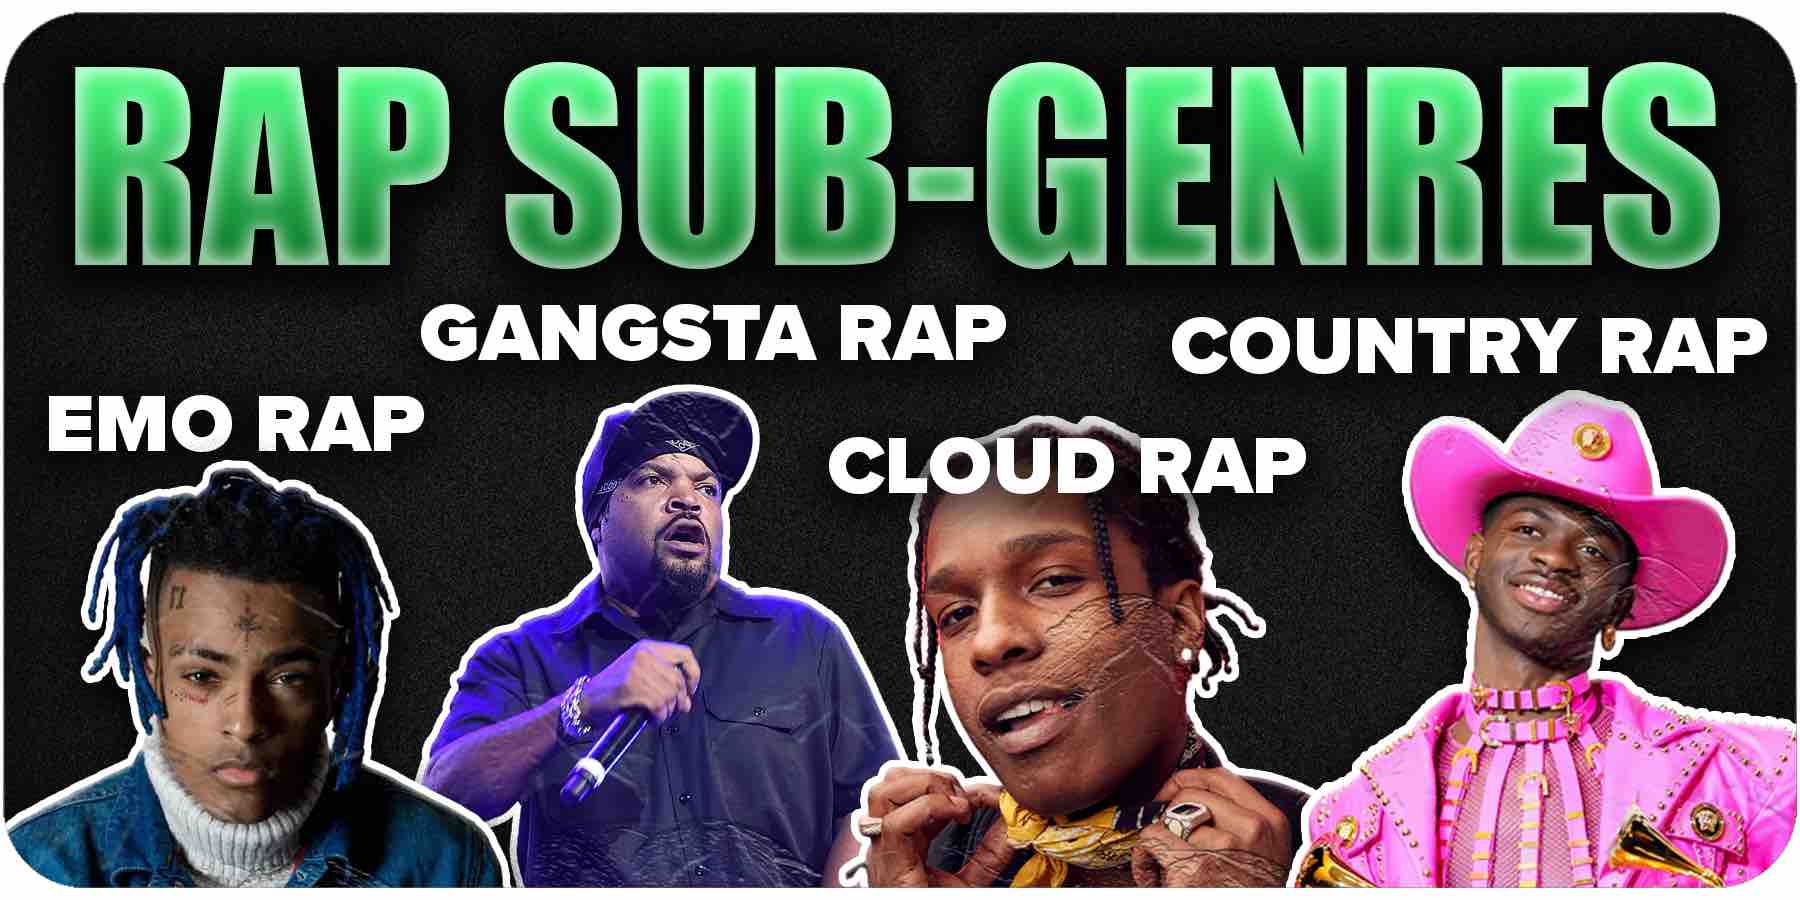 Rap Sub-Genres